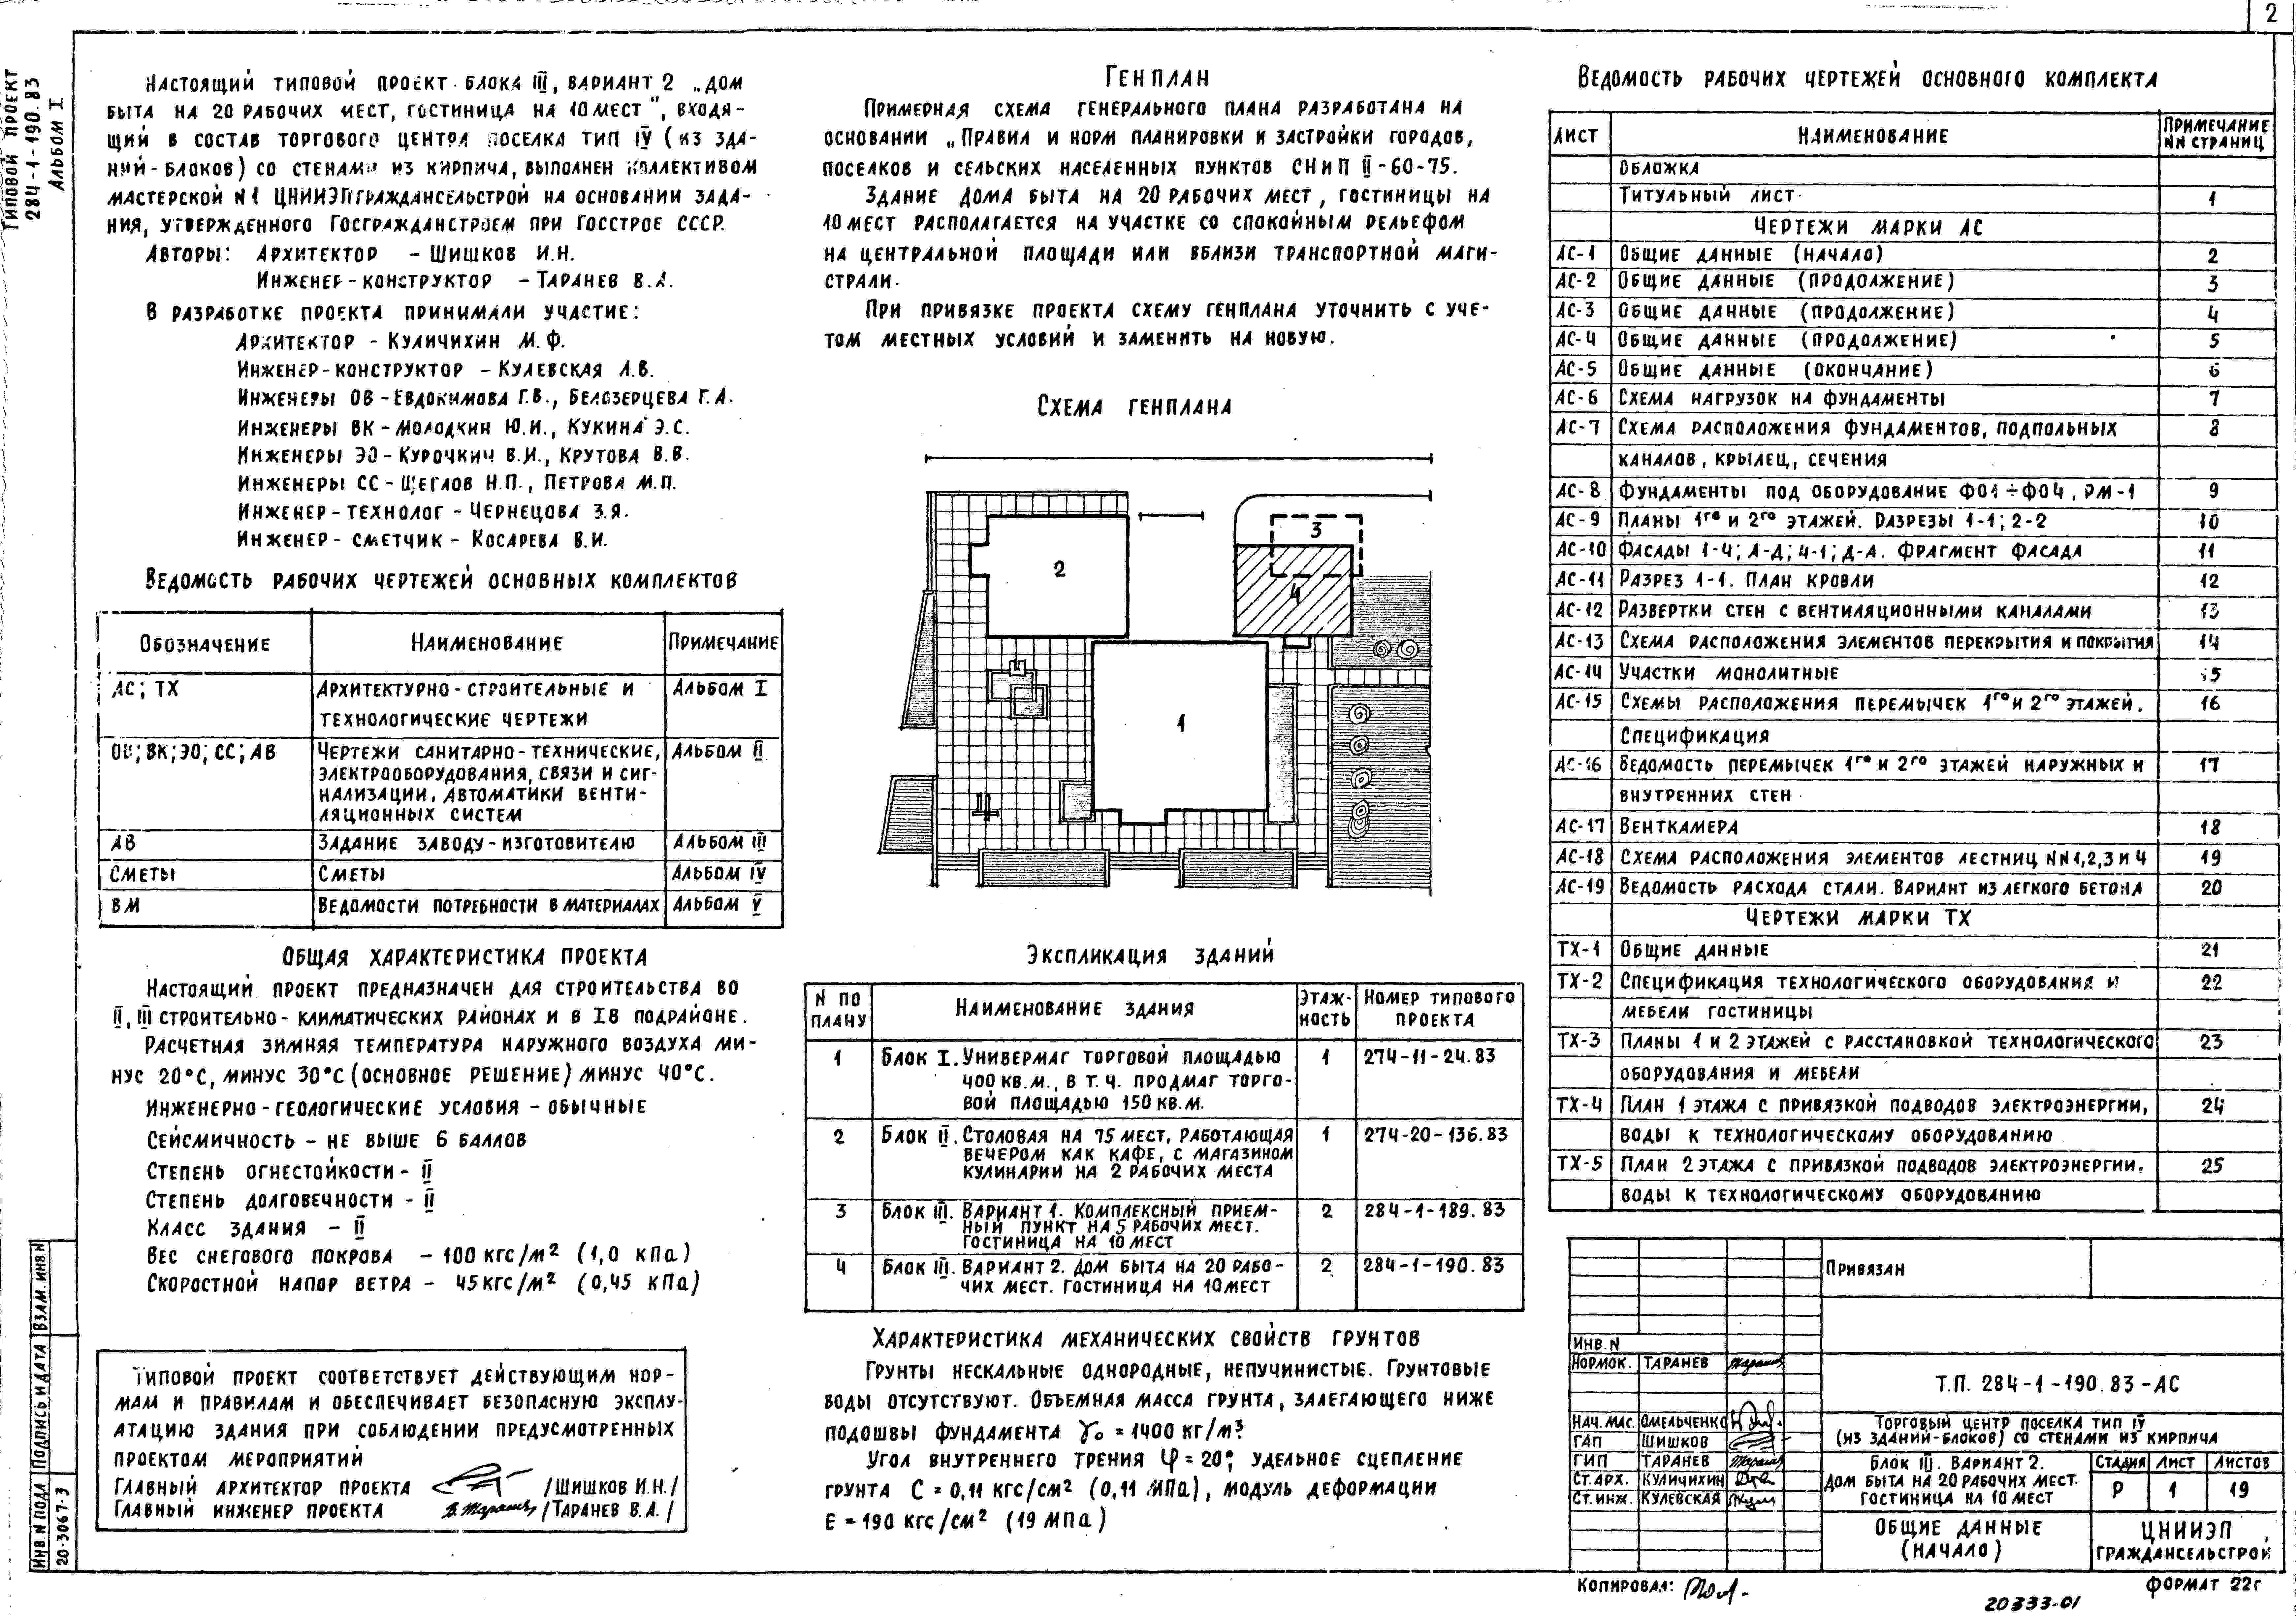 Состав альбома Типовой проект 284-1-190.83Альбом 1 Архитектурно-строительные и технологические чертежи